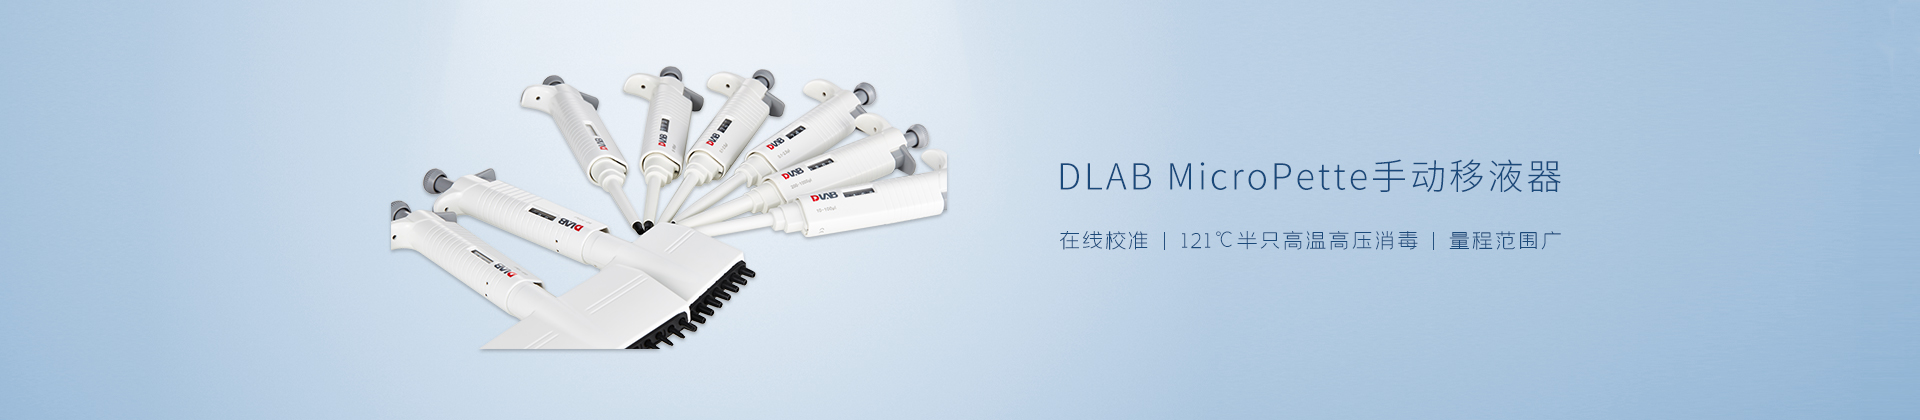 DLAB MicroPette手动移液器